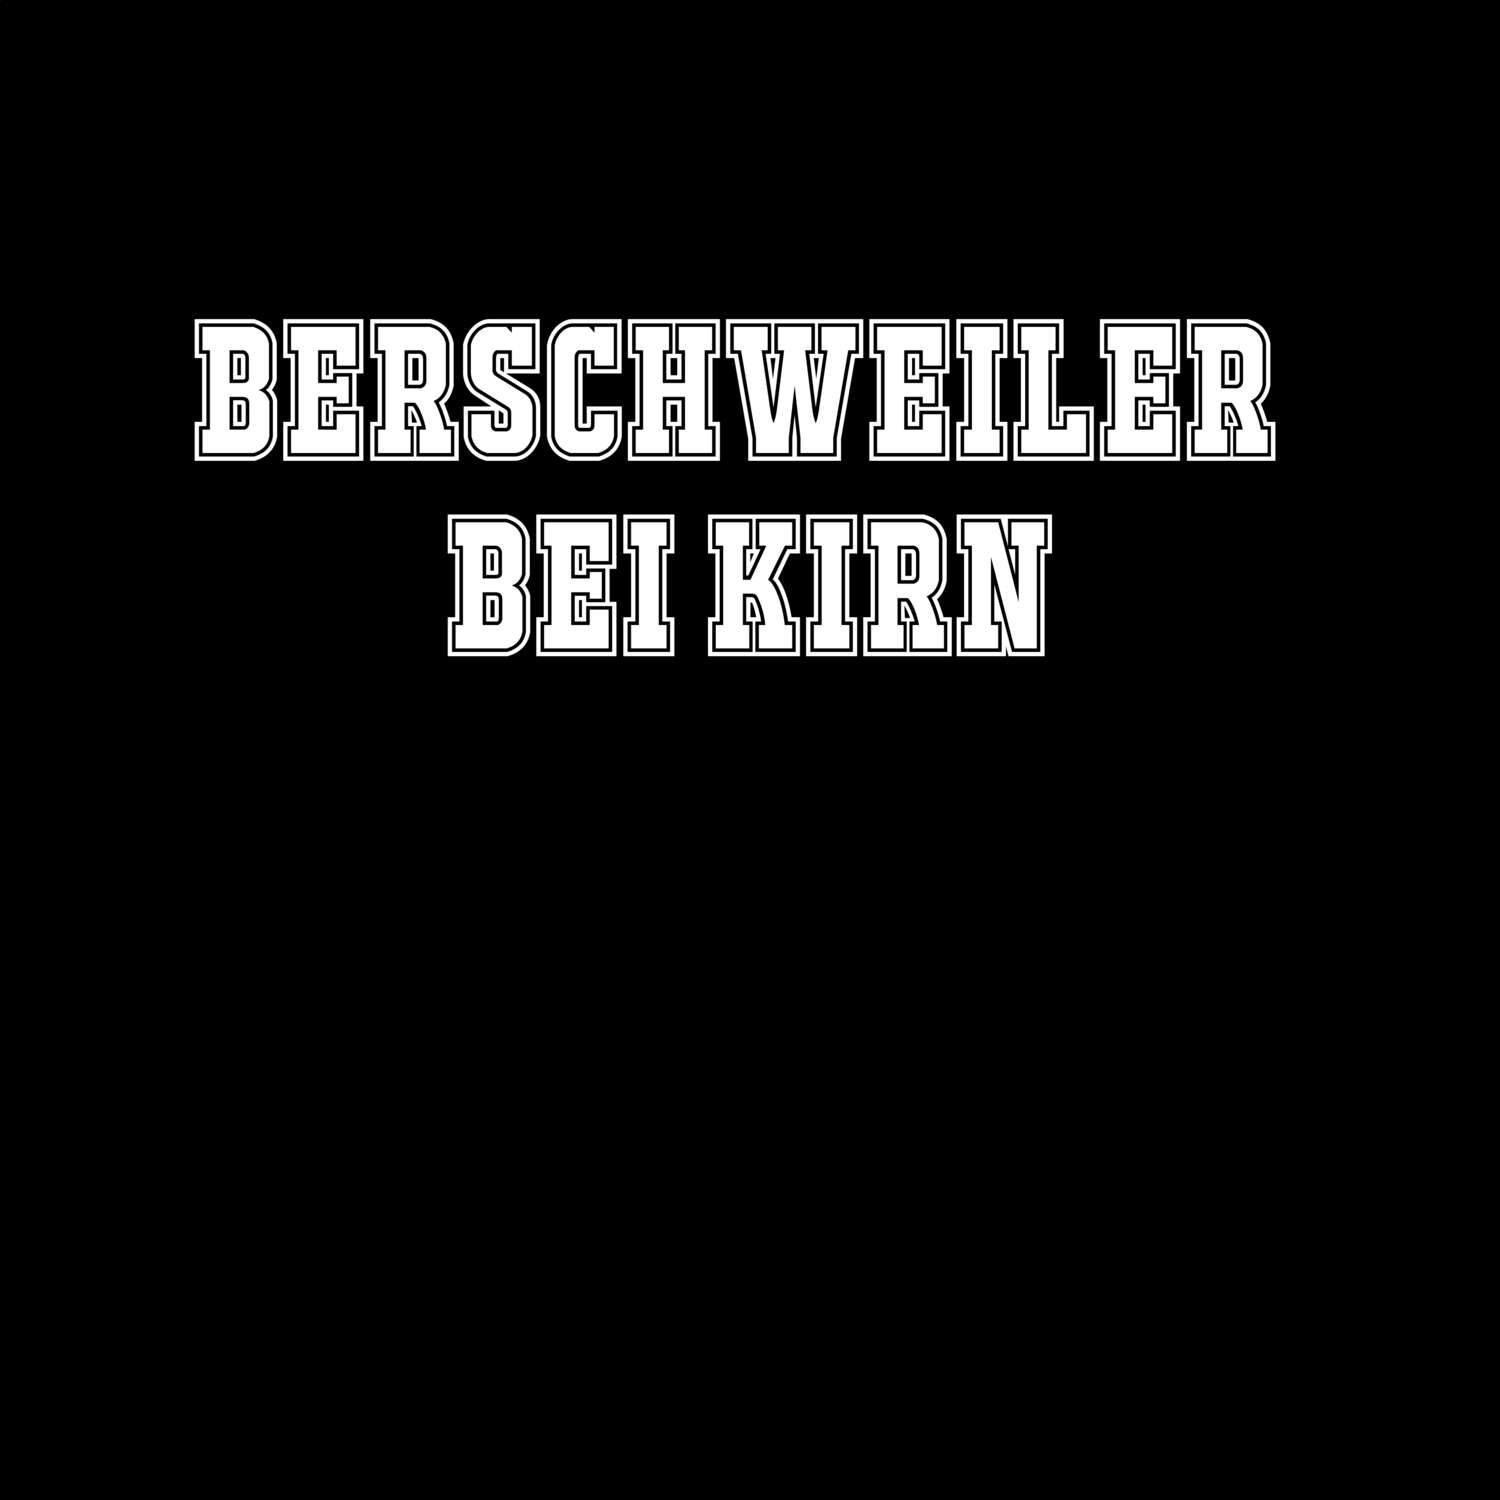 Berschweiler bei Kirn T-Shirt »Classic«